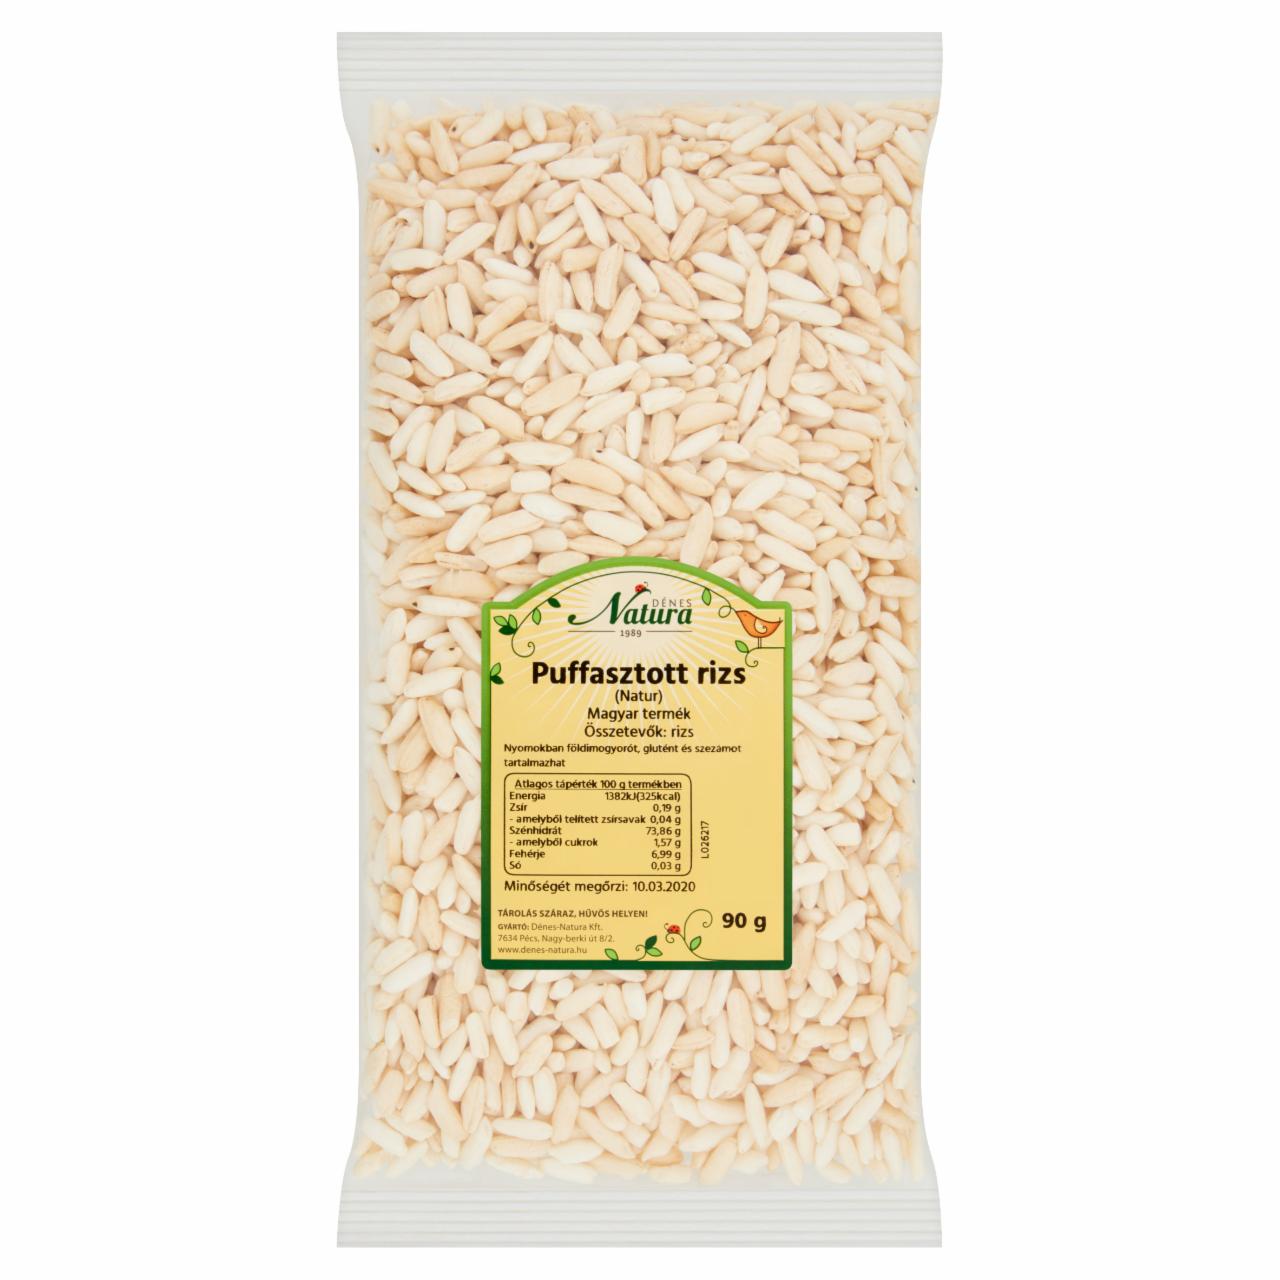 Képek - Dénes Natura natúr puffasztott rizs 90 g